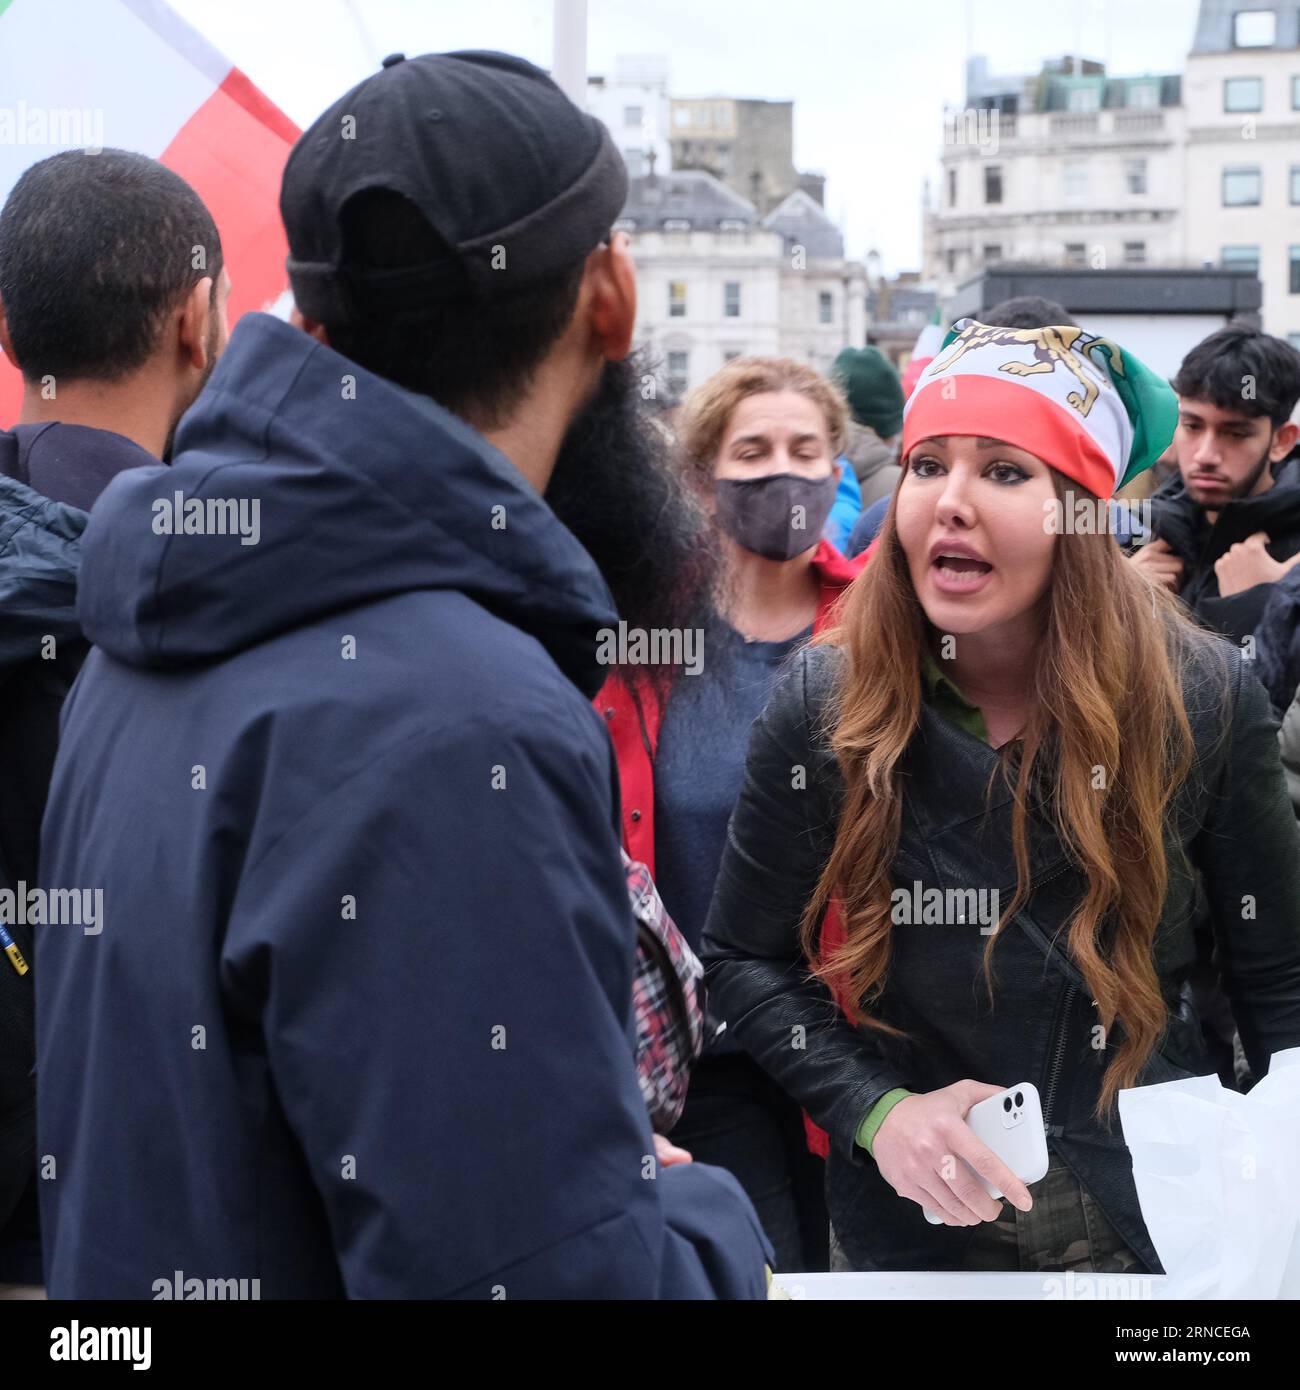 Trafalgar Square, Londra, Regno Unito. 5 novembre 2022. I manifestanti si riuniscono per mostrare la loro rabbia per la morte di Mahsa Amini. Marchio di credito Lear/Alamy Stock Photo Foto Stock